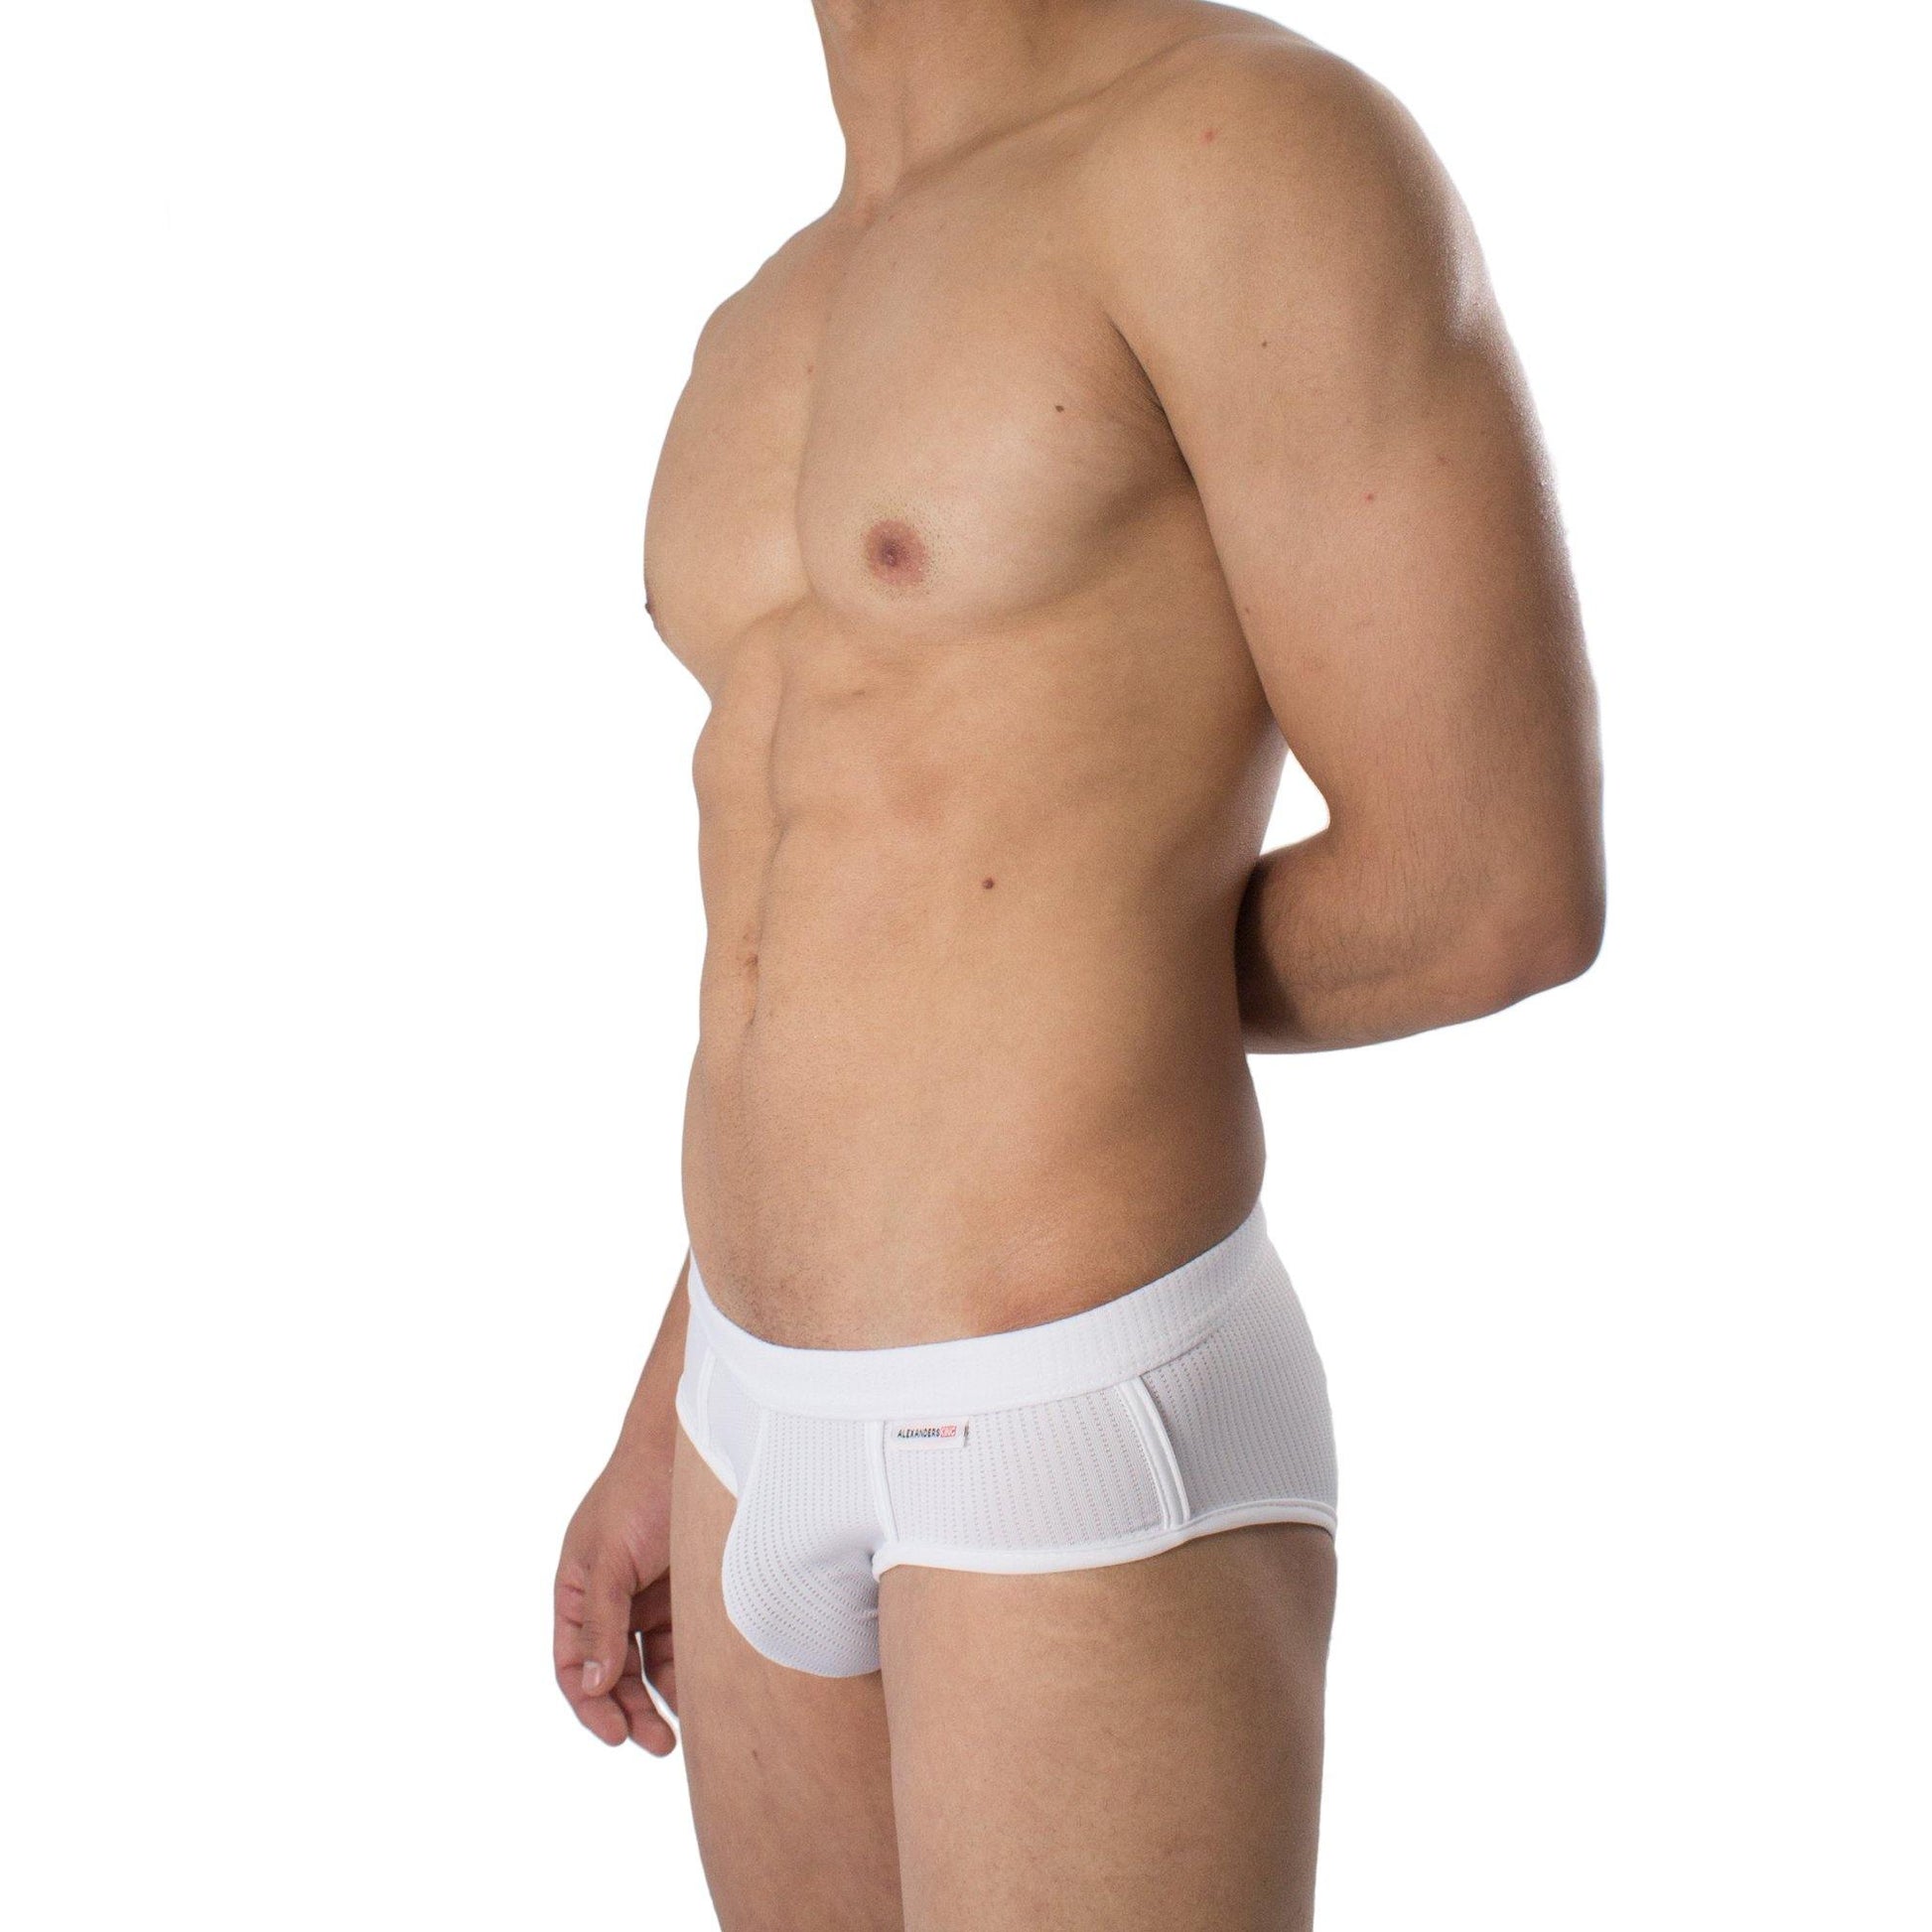 PB0001 - Brief Chroma Blanco Unwet - AlexandersKing Underwear